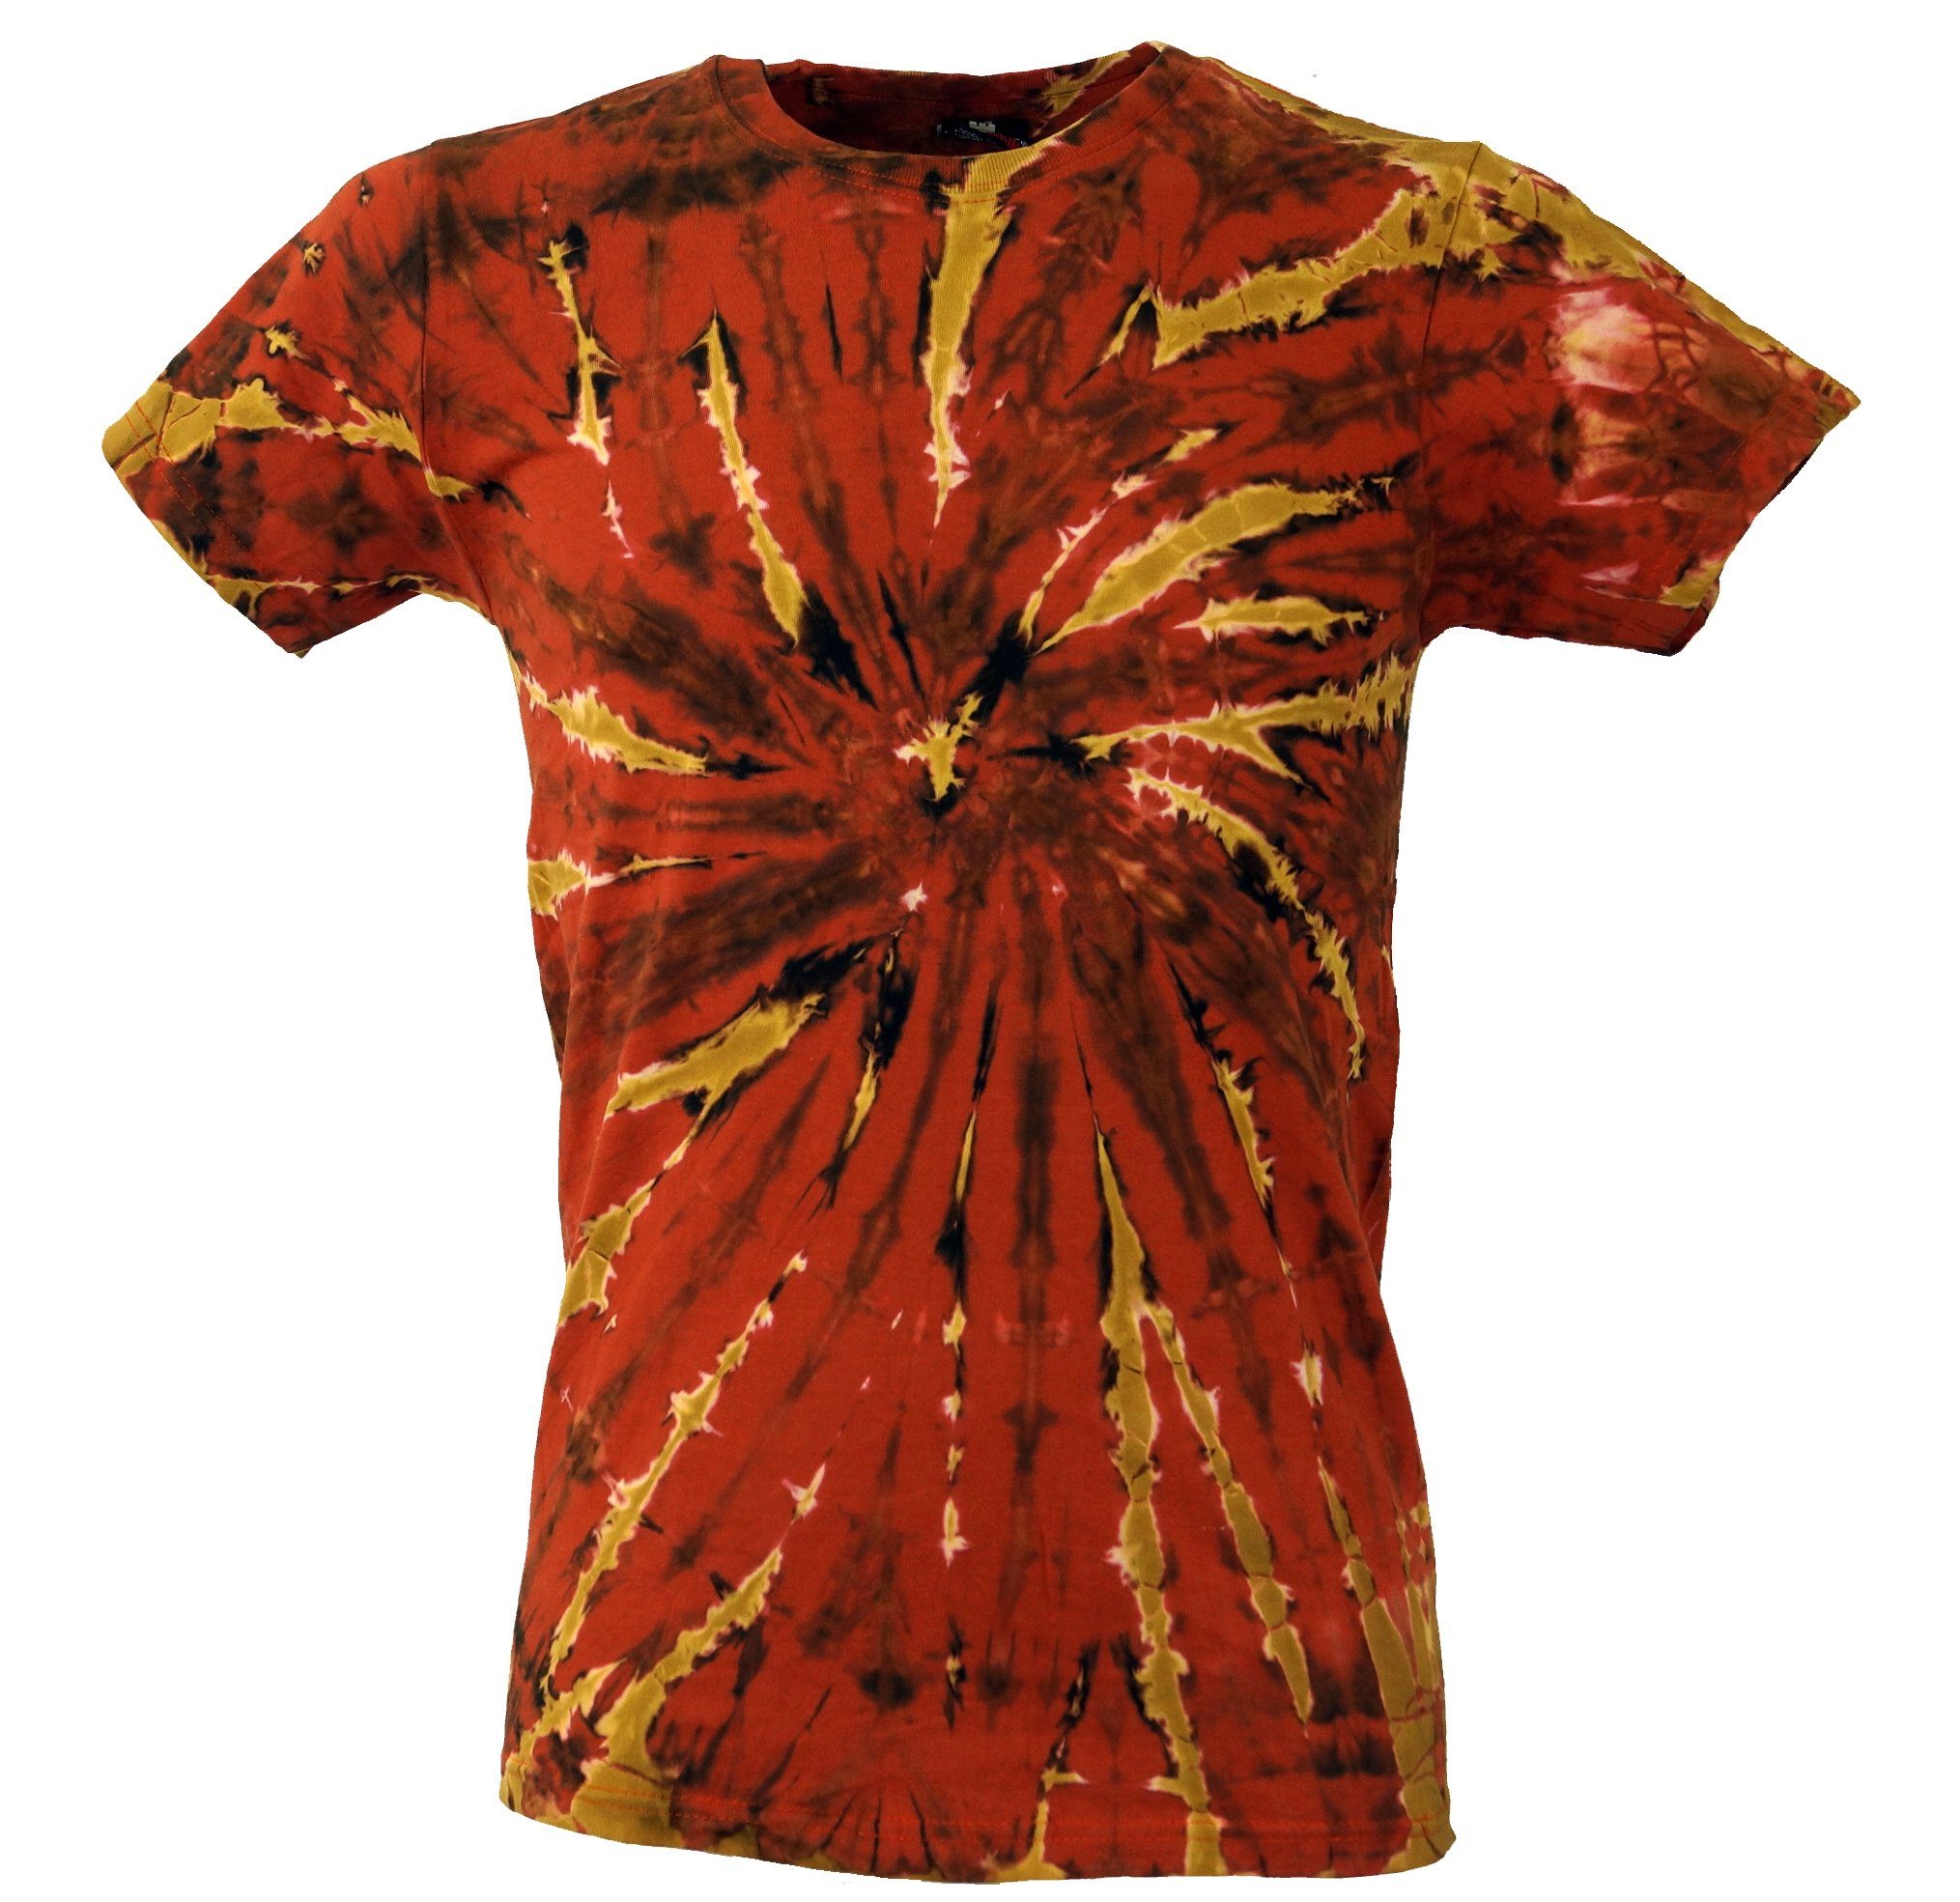 Kurzarm Herren Style, Guru-Shop alternative T-Shirt T-Shirt, Bekleidung Shirt Dye rostorange Batik Goa Tie Hippie, -.. Festival, Handarbeit,